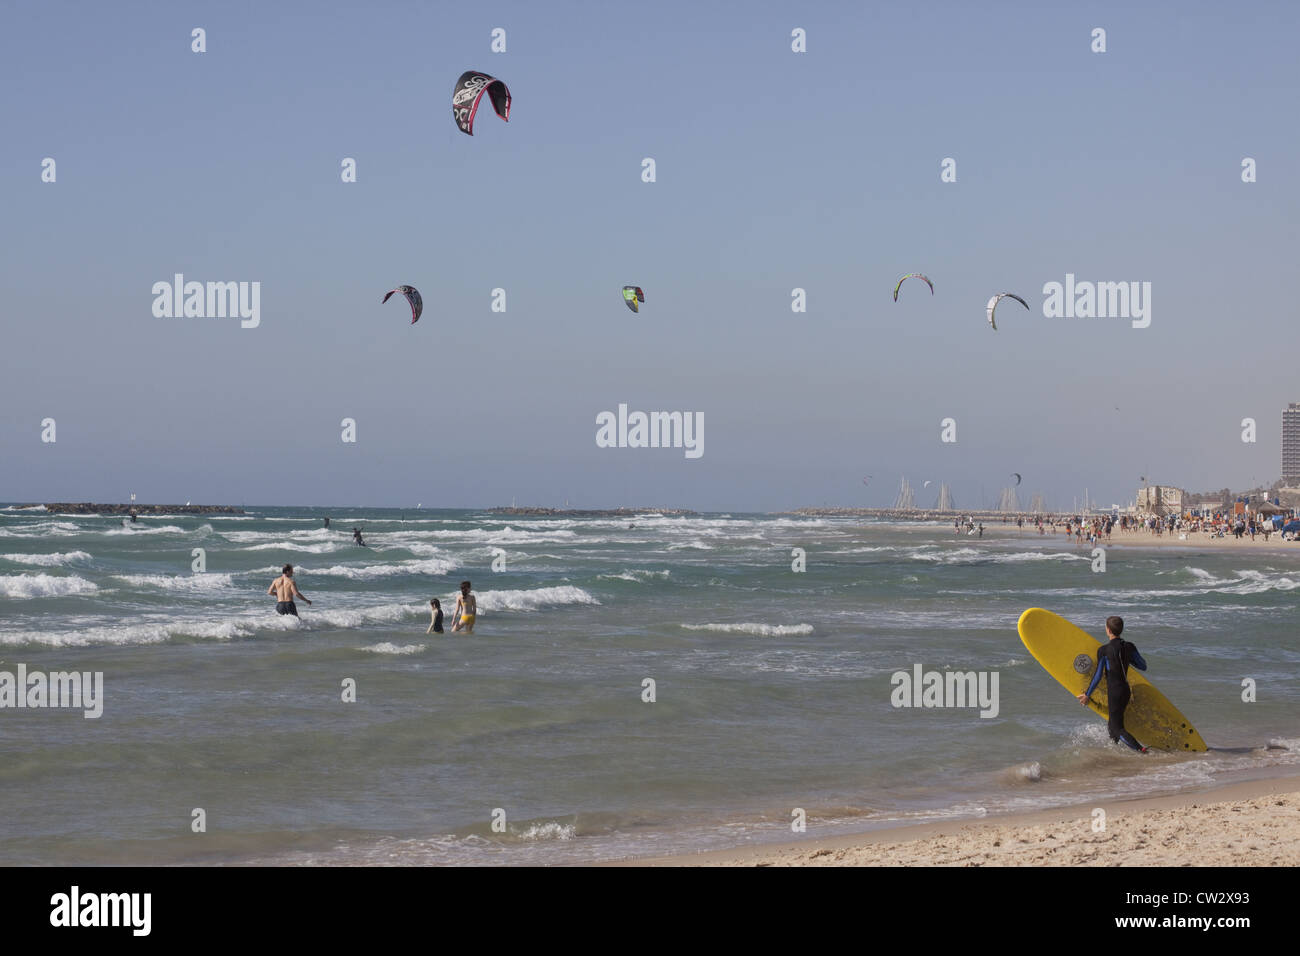 Surfer ins Wasser mit Kite-Surfer und Schwimmer in den Hintergrund, Tel Aviv, Israel Stockfoto